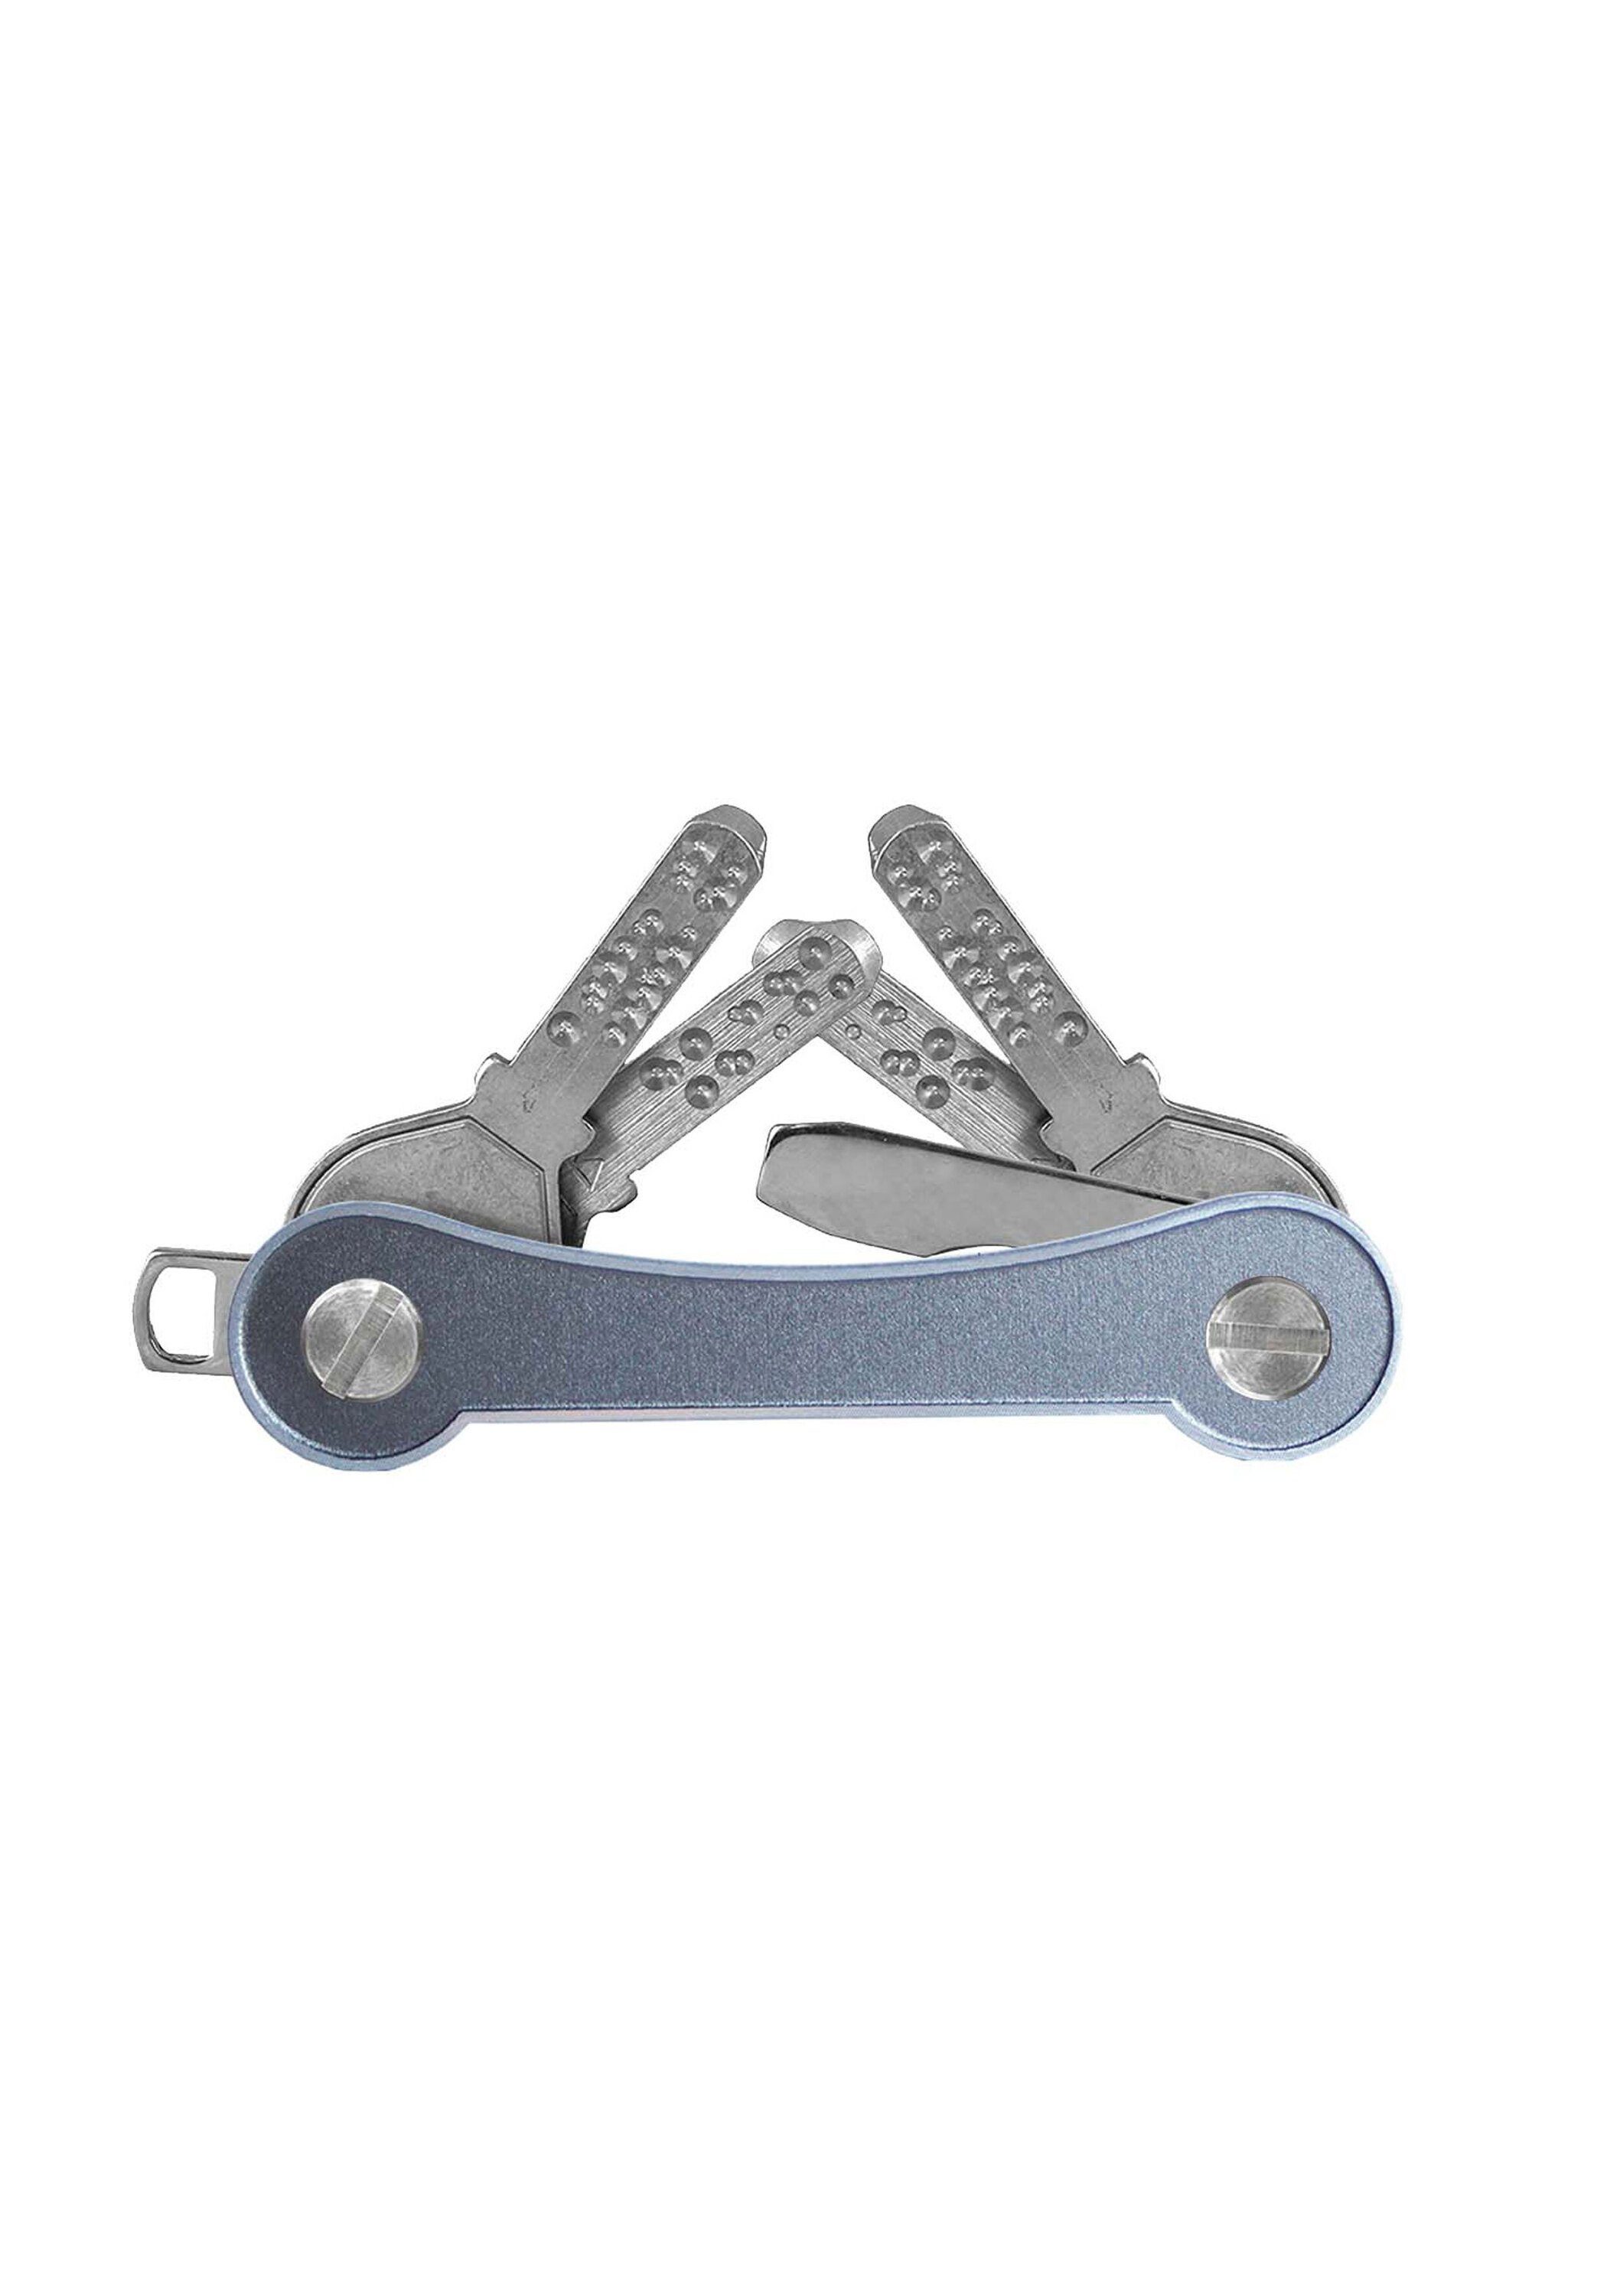 SWISS grau Schlüsselanhänger frame, keycabins Aluminium Made